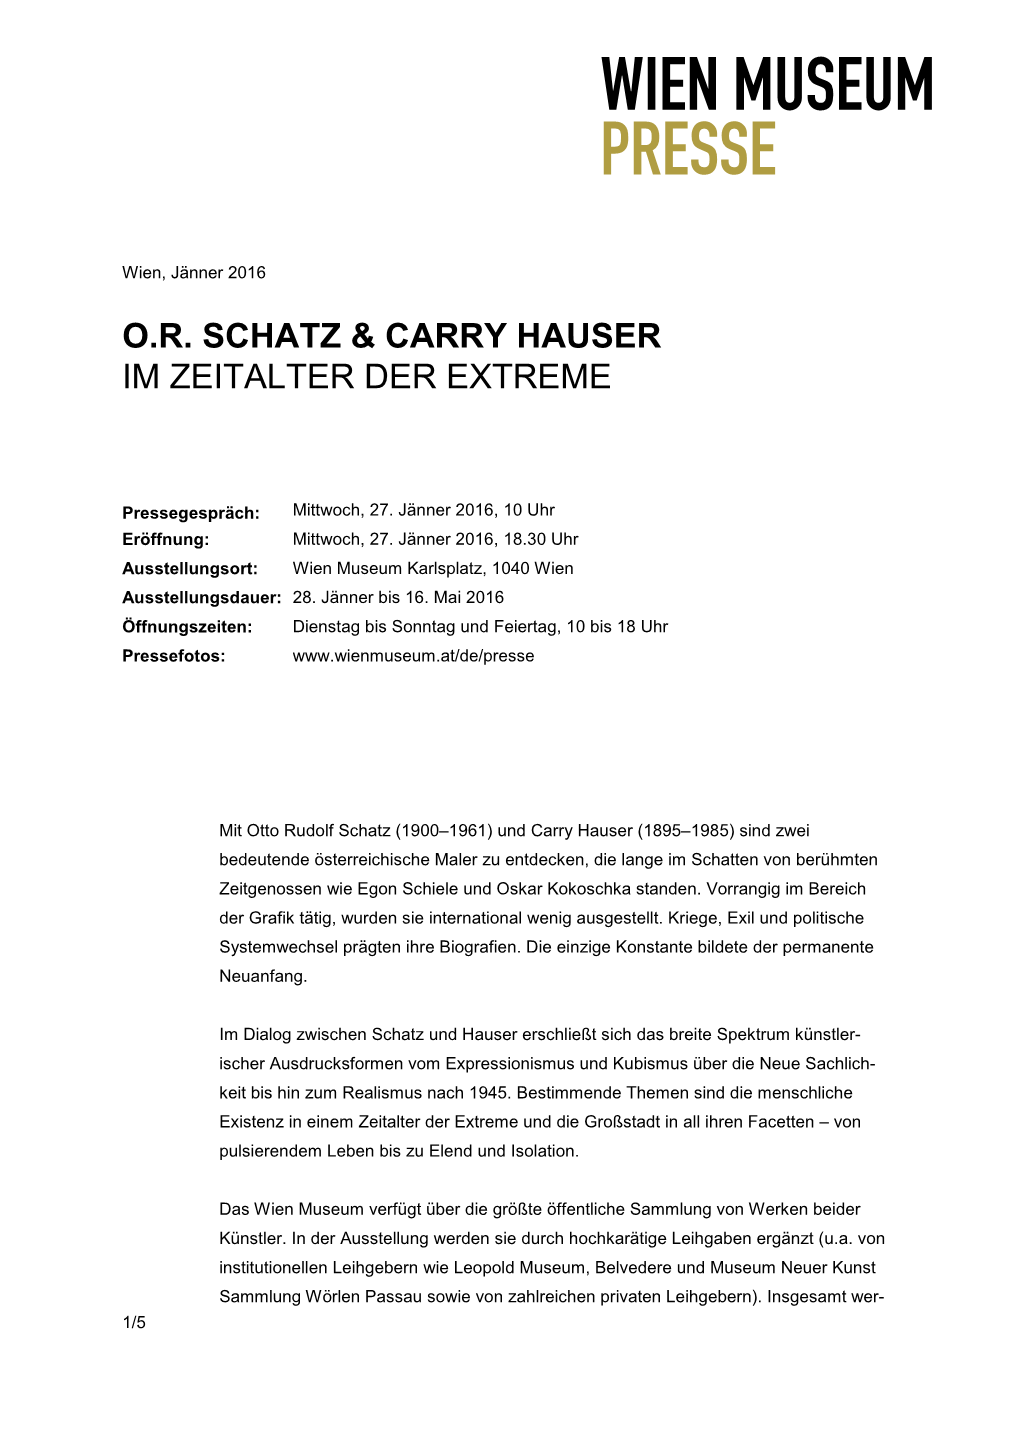 O.R. Schatz & Carry Hauser Im Zeitalter Der Extreme